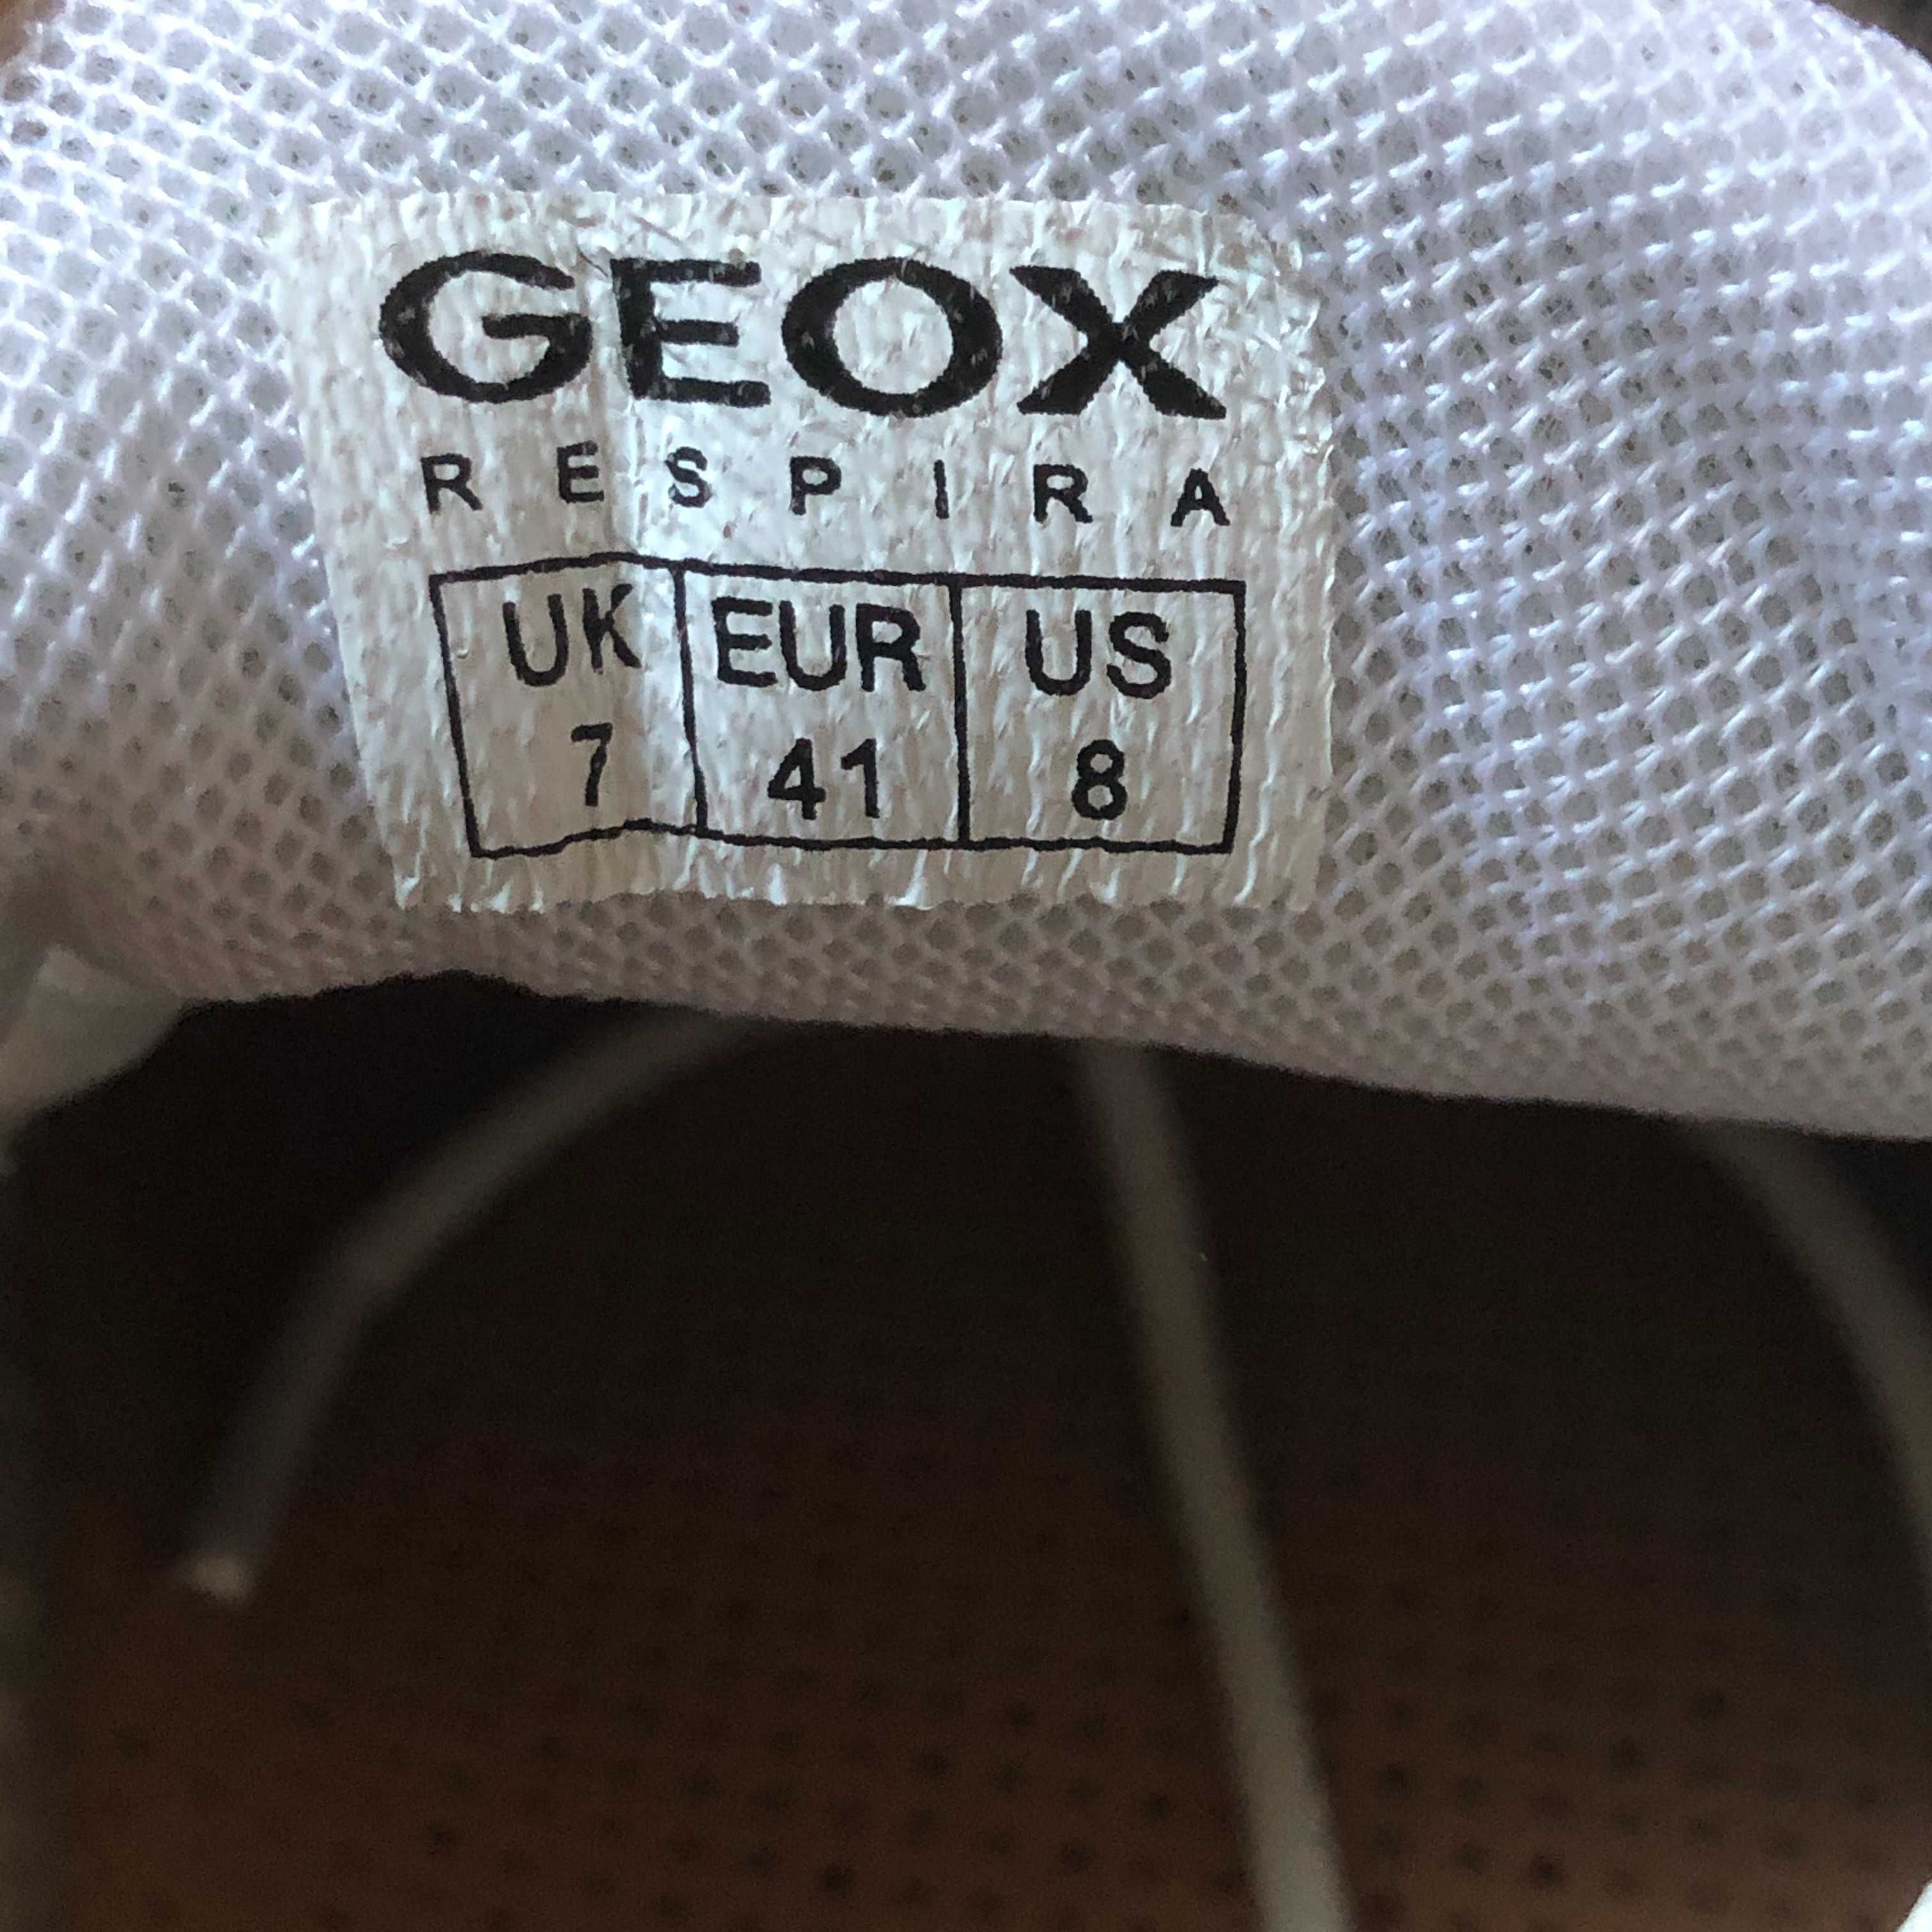 Продам новые кожаные  кроссовки GEOX RESPIRA размер 41.5 – 42